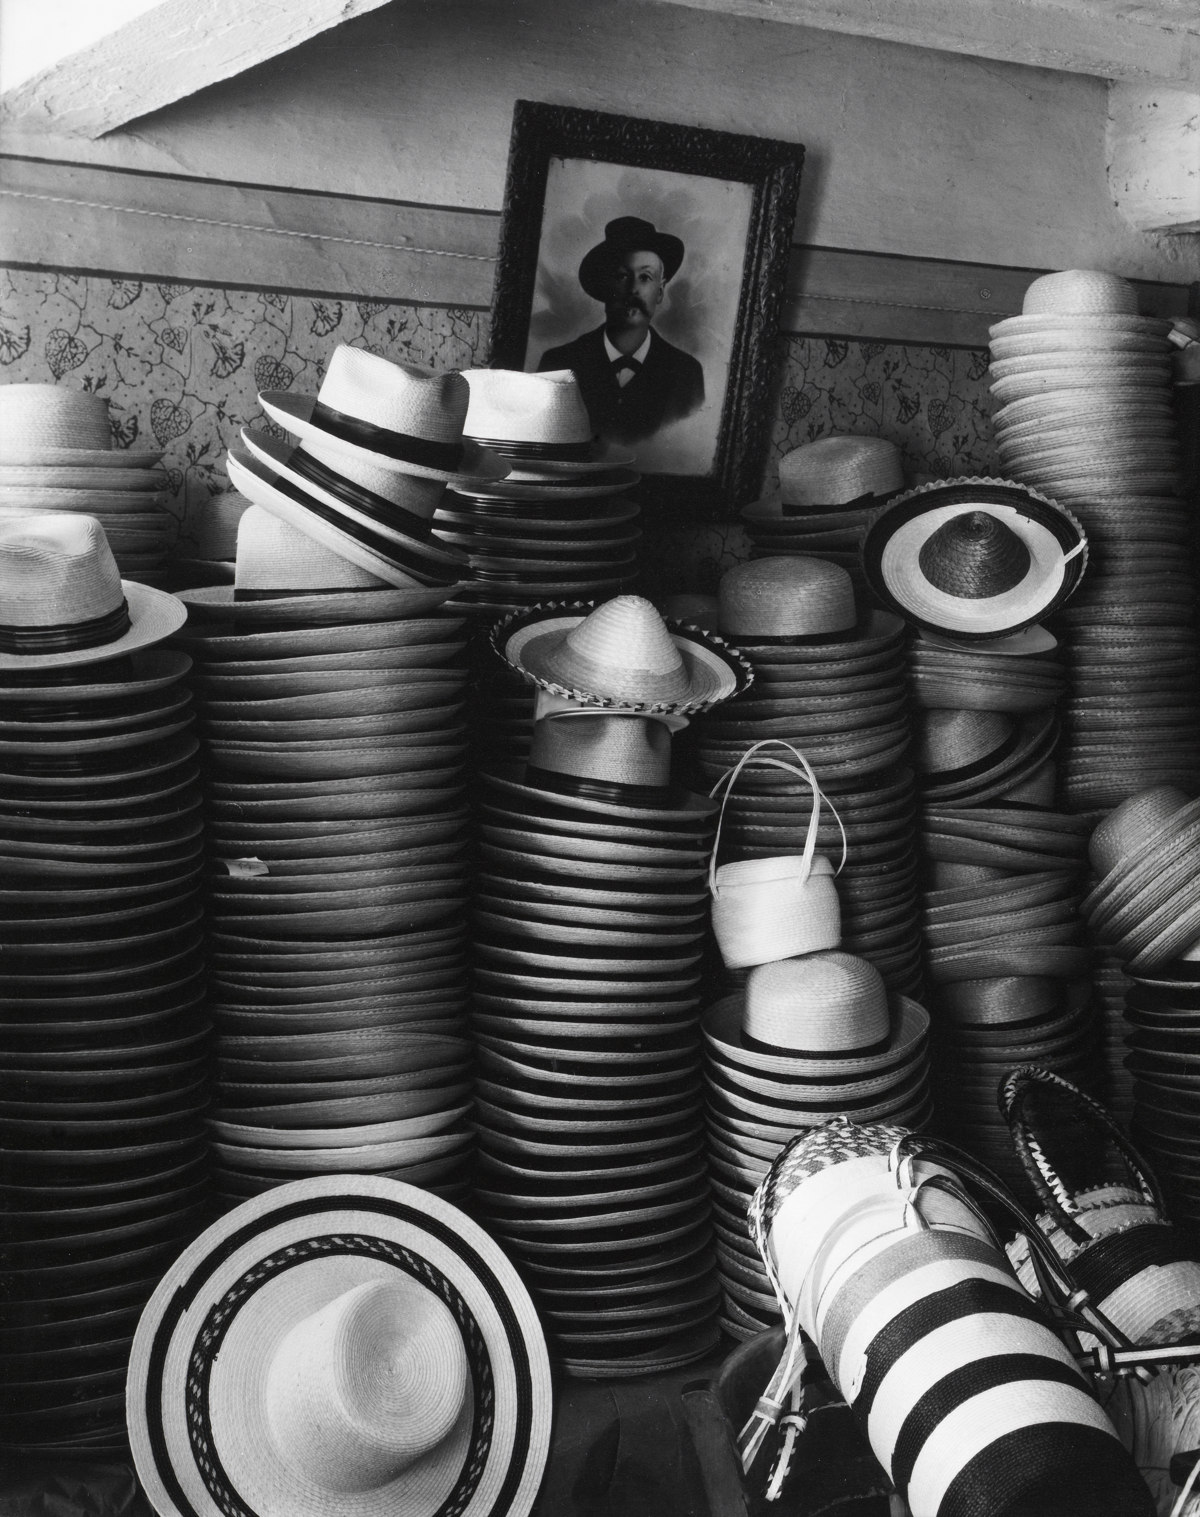 Hat Factory, Luzzara, Italy [Fábrica de sombreros, Luzzara, Italia] © Aperture Foundation, Inc., Paul Strand Archive © COLECCIONES Fundación MAPFRE